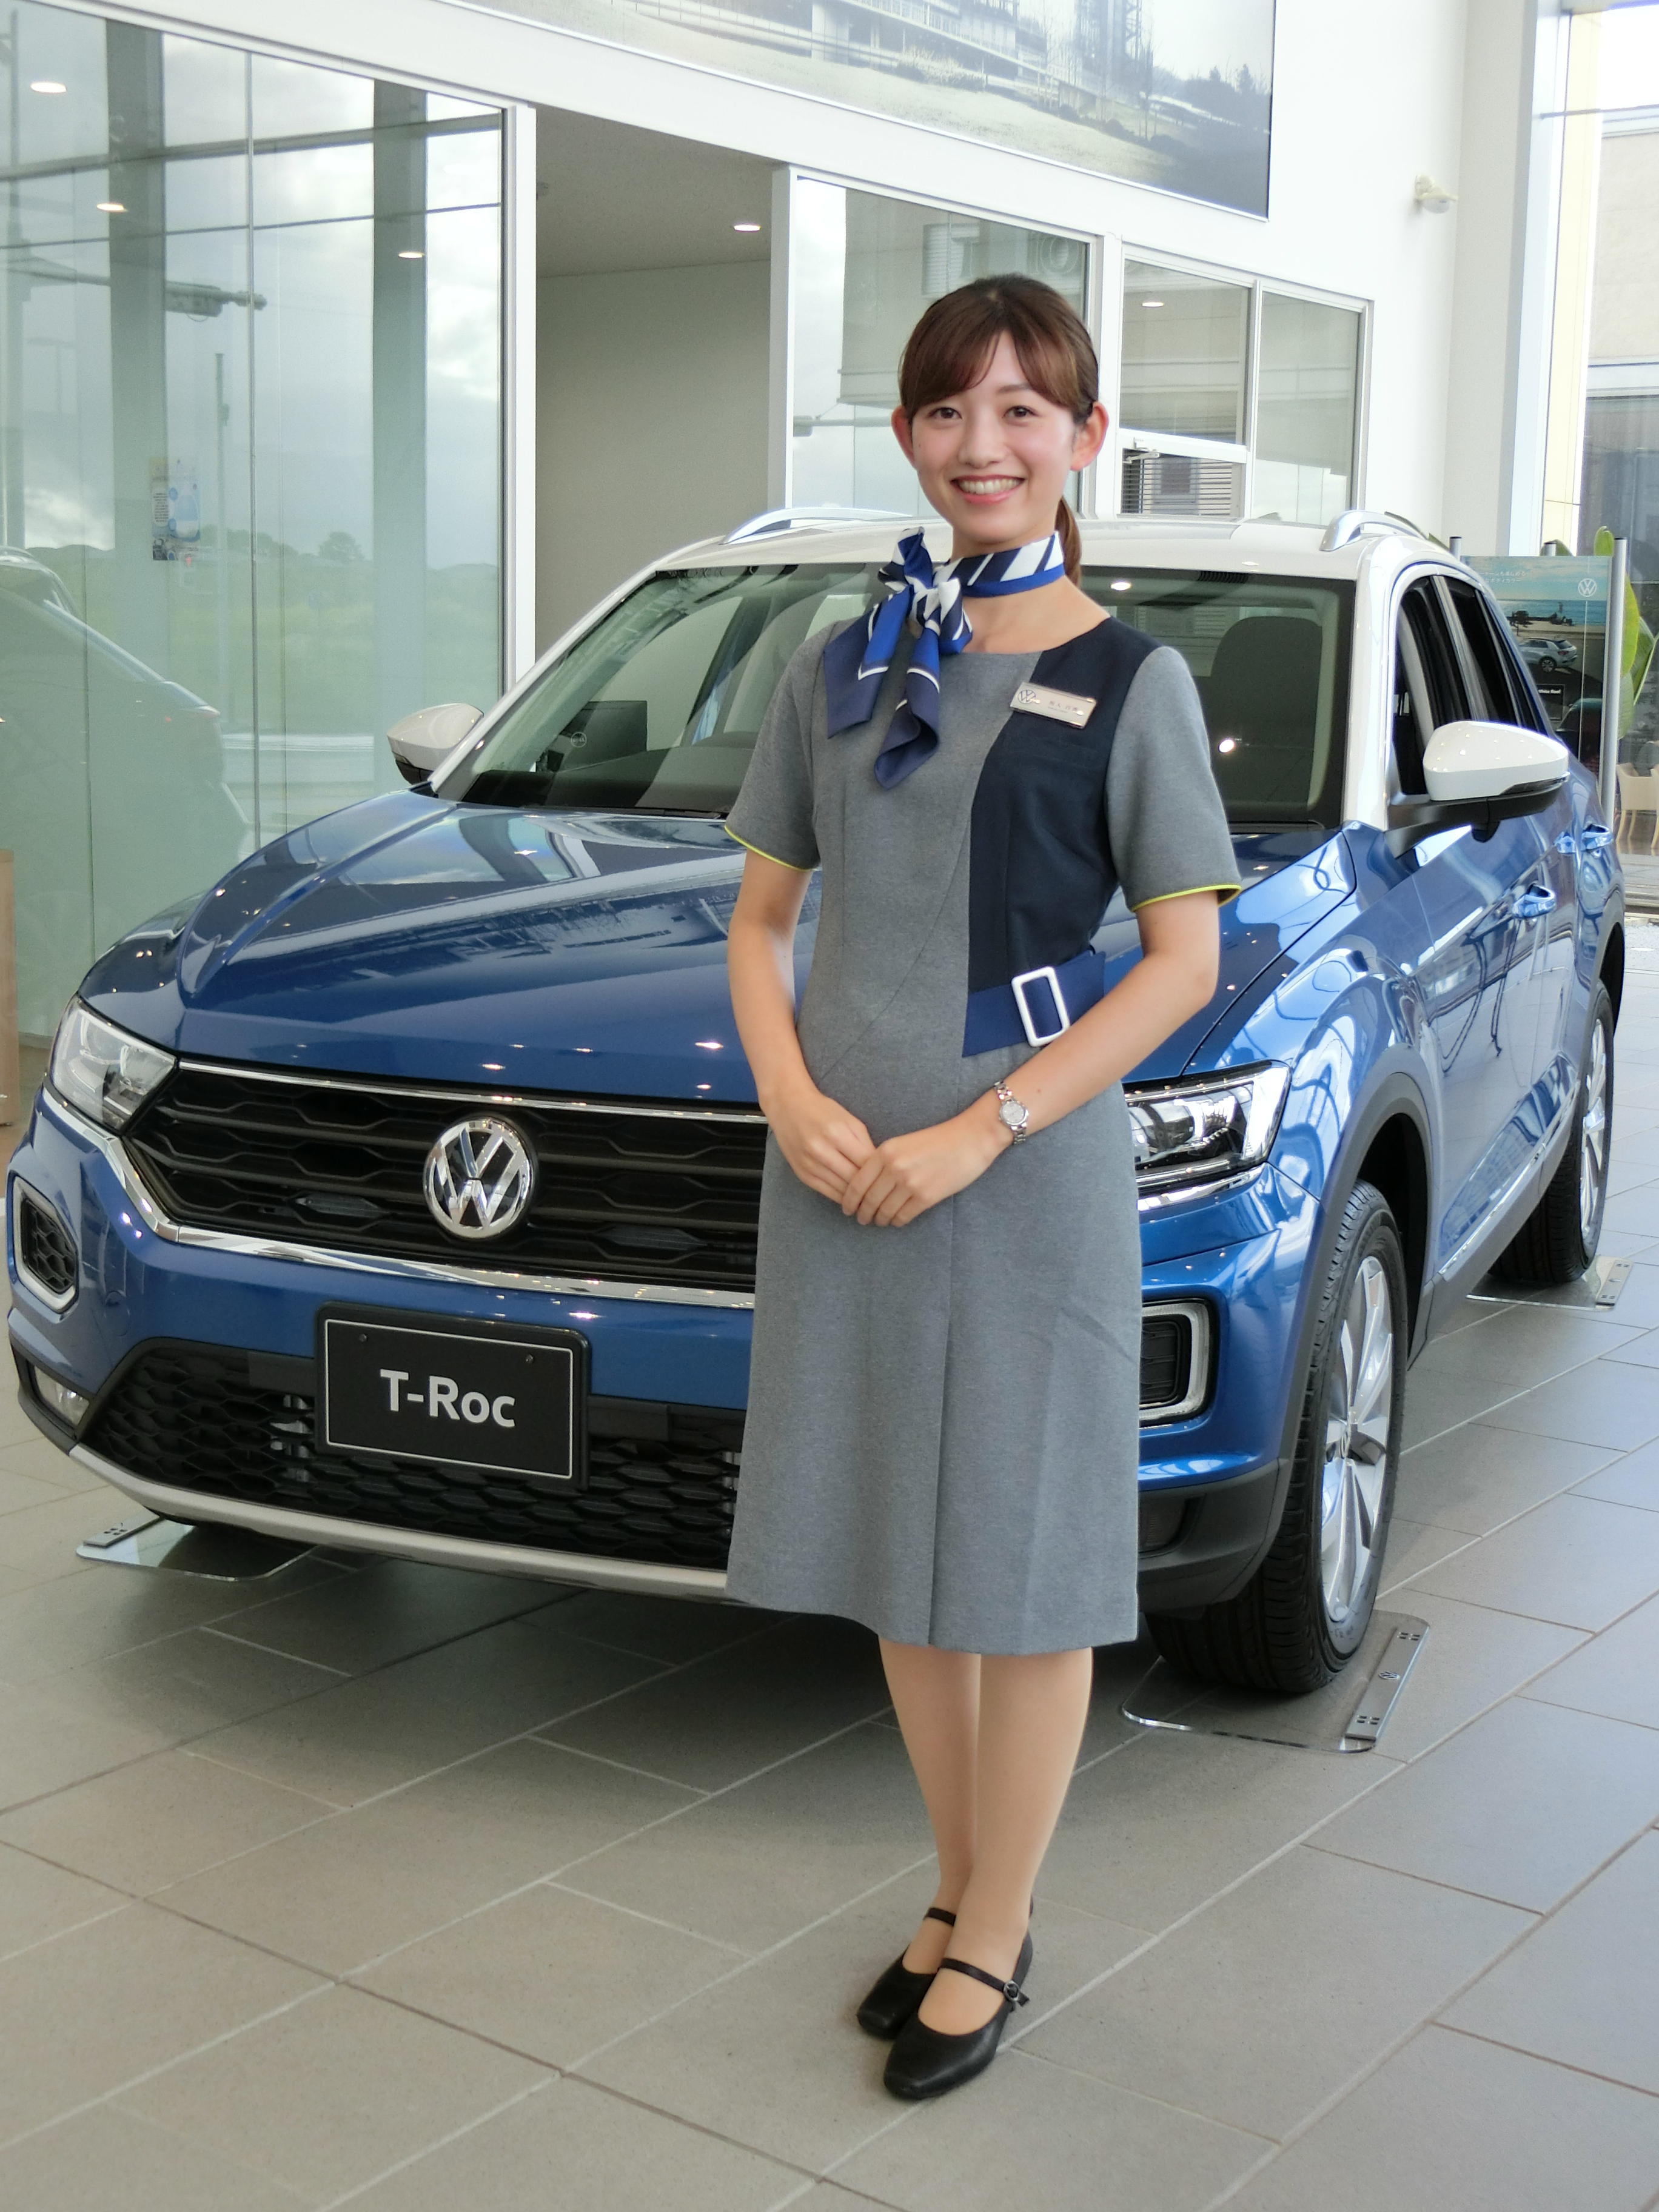 スタッフブログ 女性スタッフユニフォームの変更について Volkswagenつくば学園 Volkswagen Tsukubagakuen